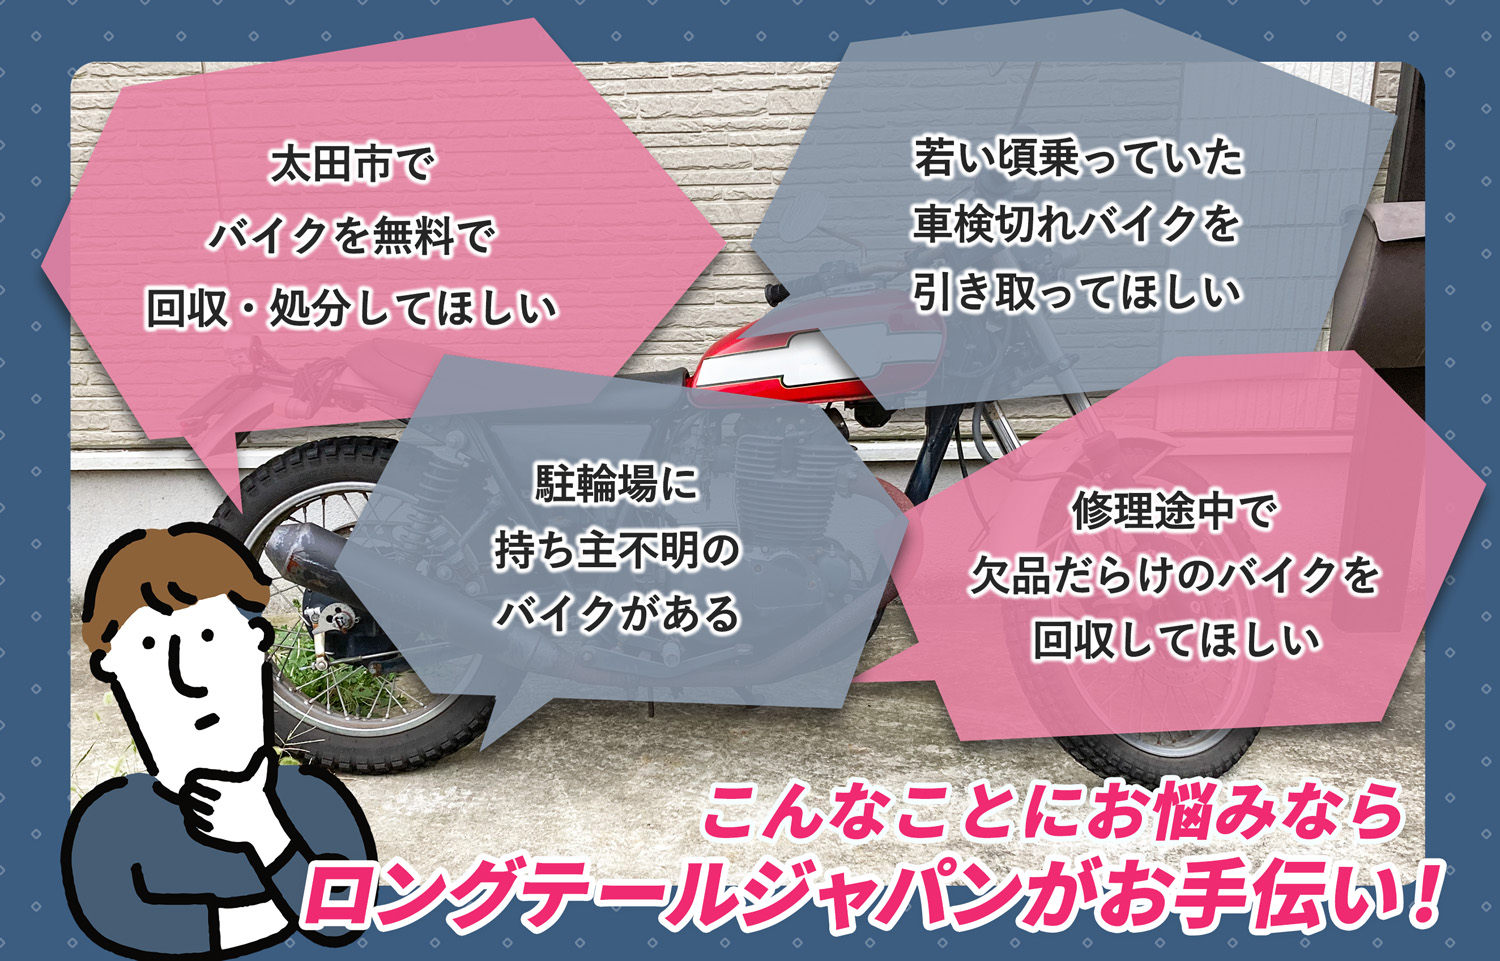 太田市でこんなバイクの処分にお困りでしたらバイク無料回収処分隊がお手伝いいたします。